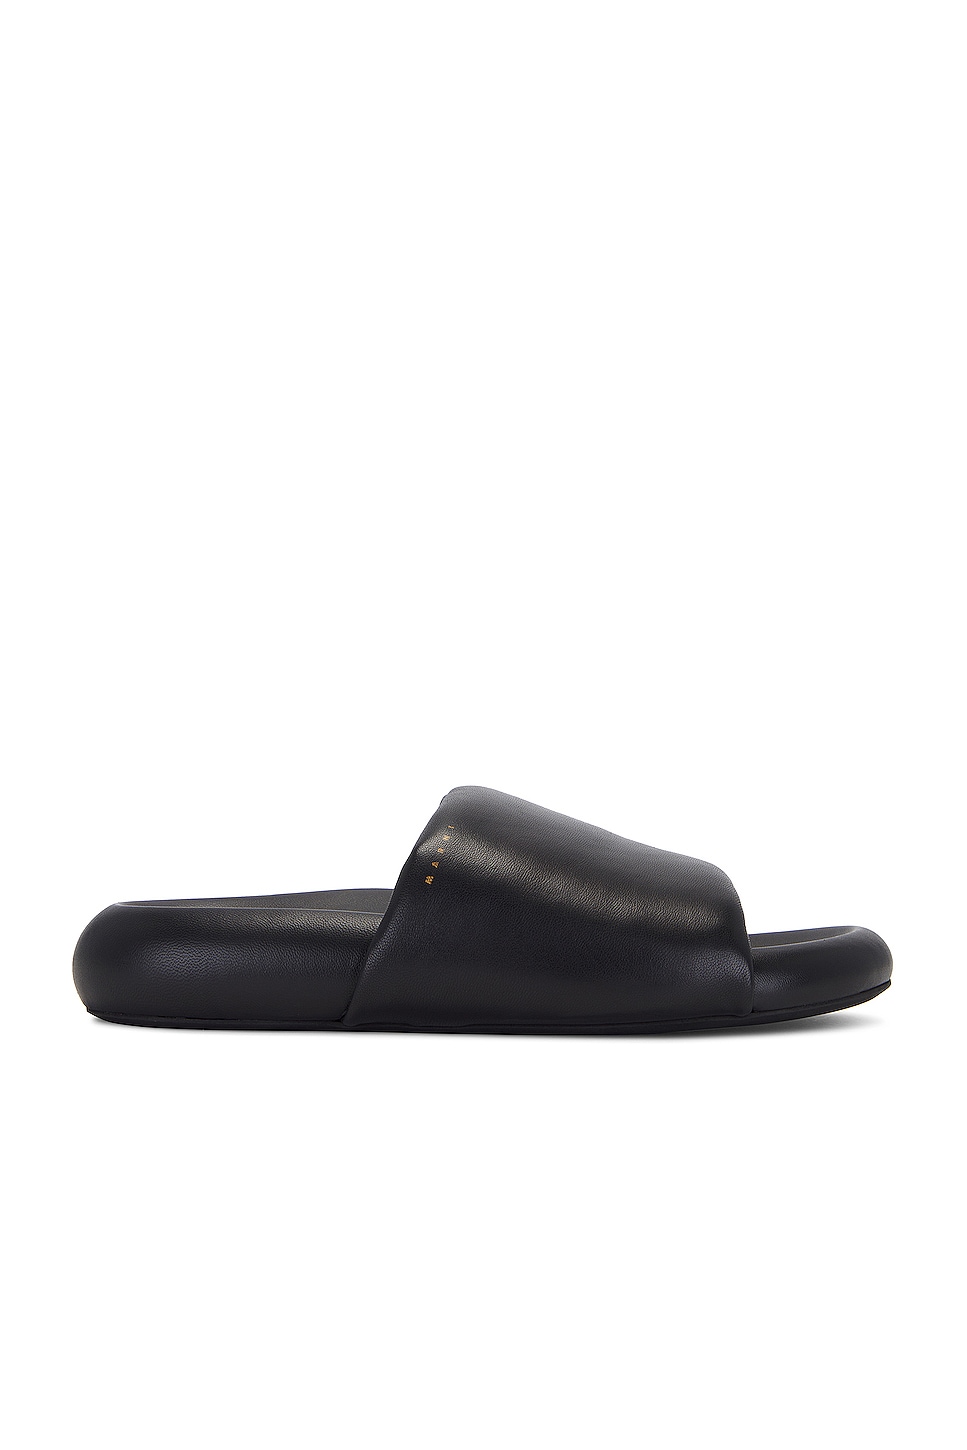 Image 1 of Marni Sandal in Black